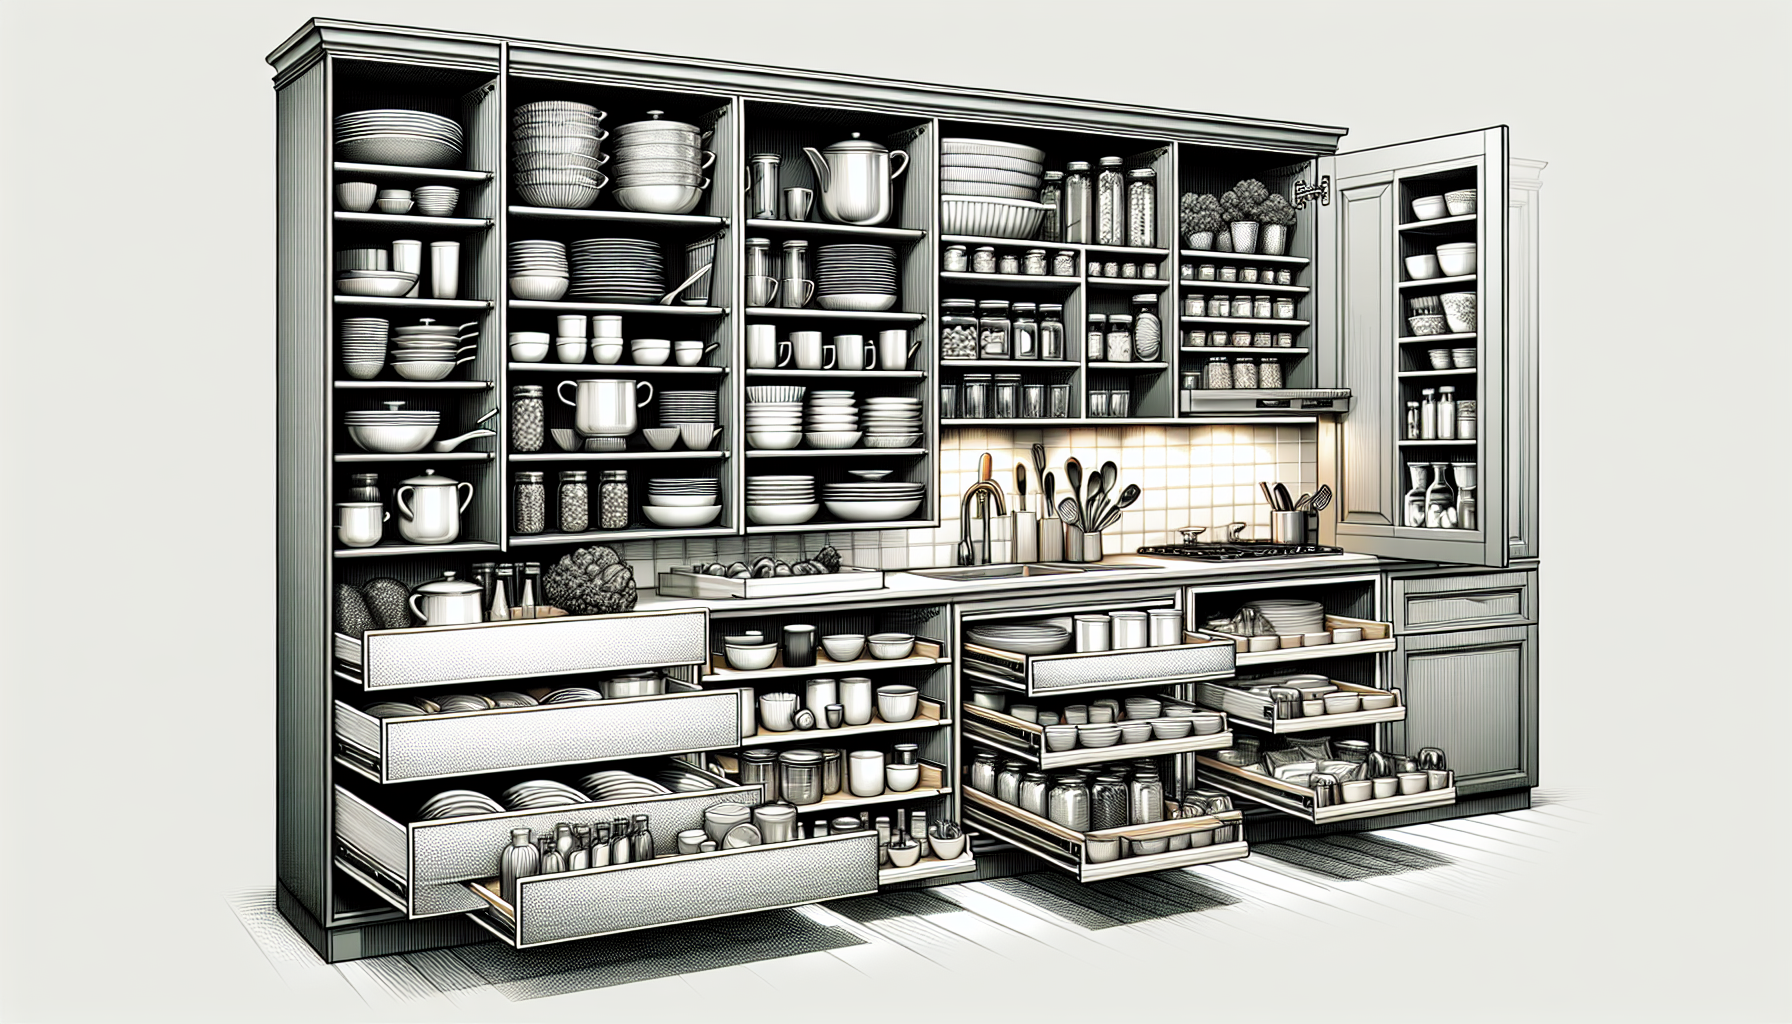 Maximizing kitchen storage